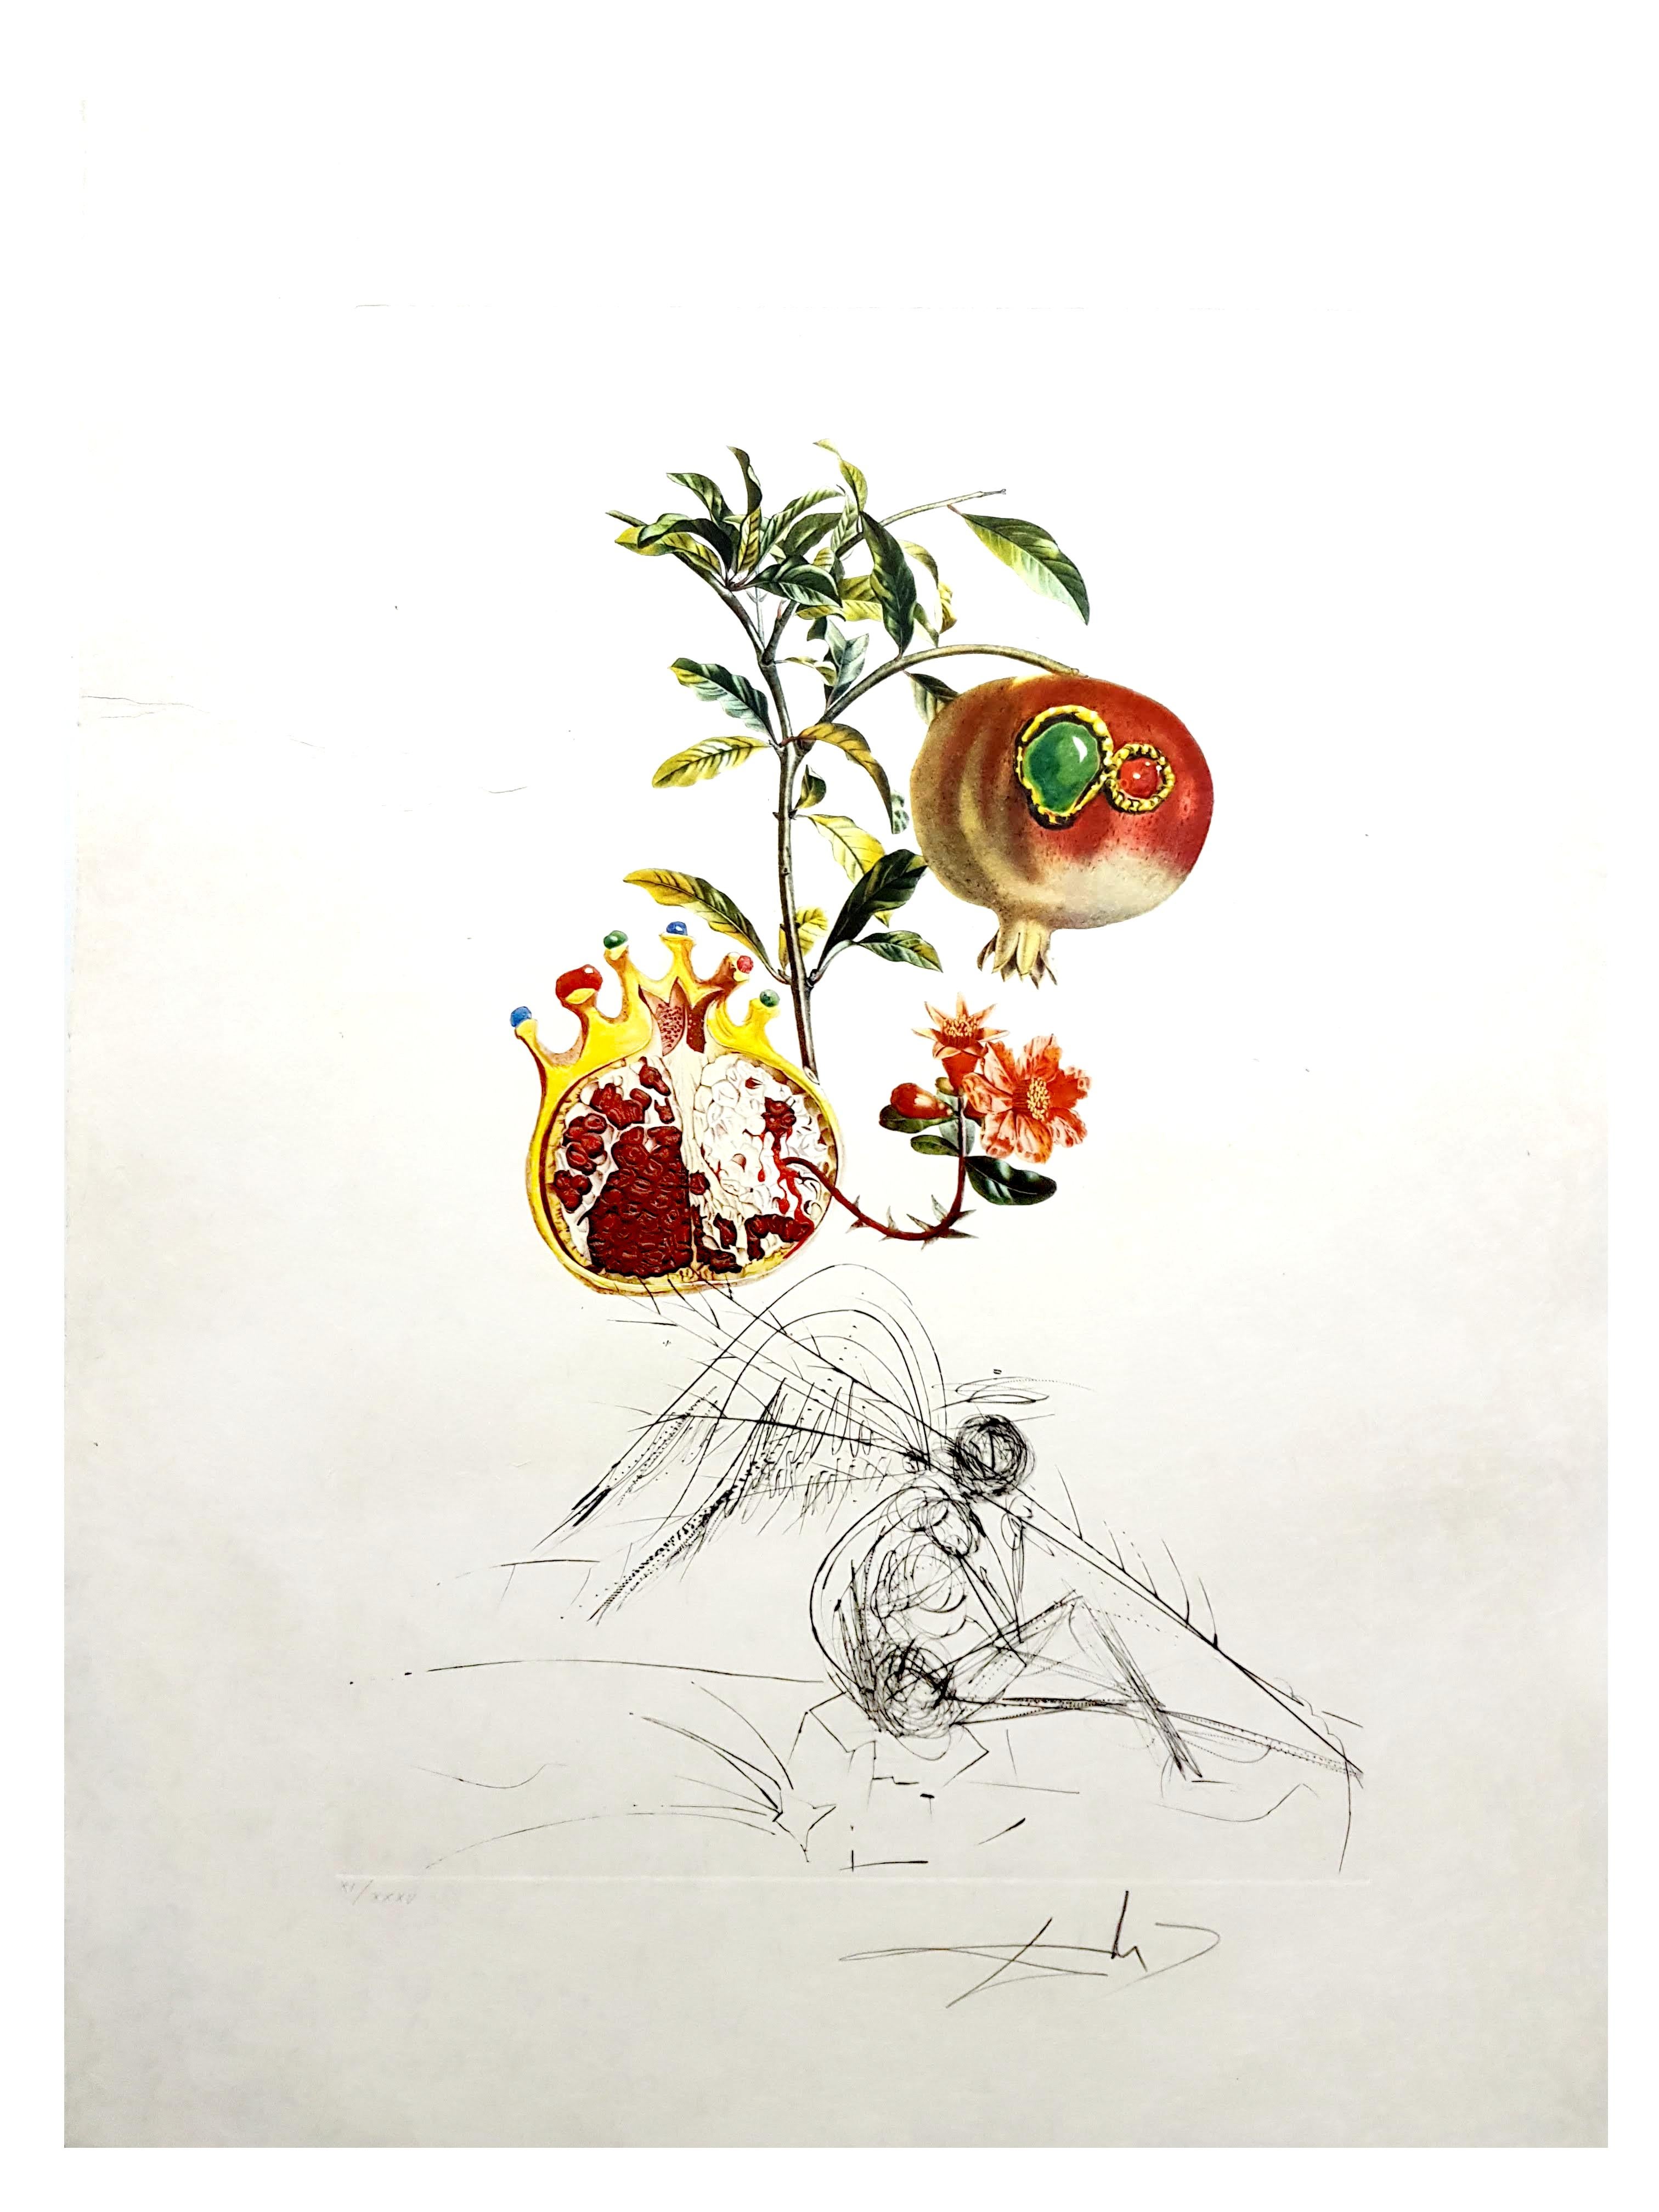 Salvador Dali - Angel and Pomegranate - Original Hand-Signed Lithograph - Print by Salvador Dalí